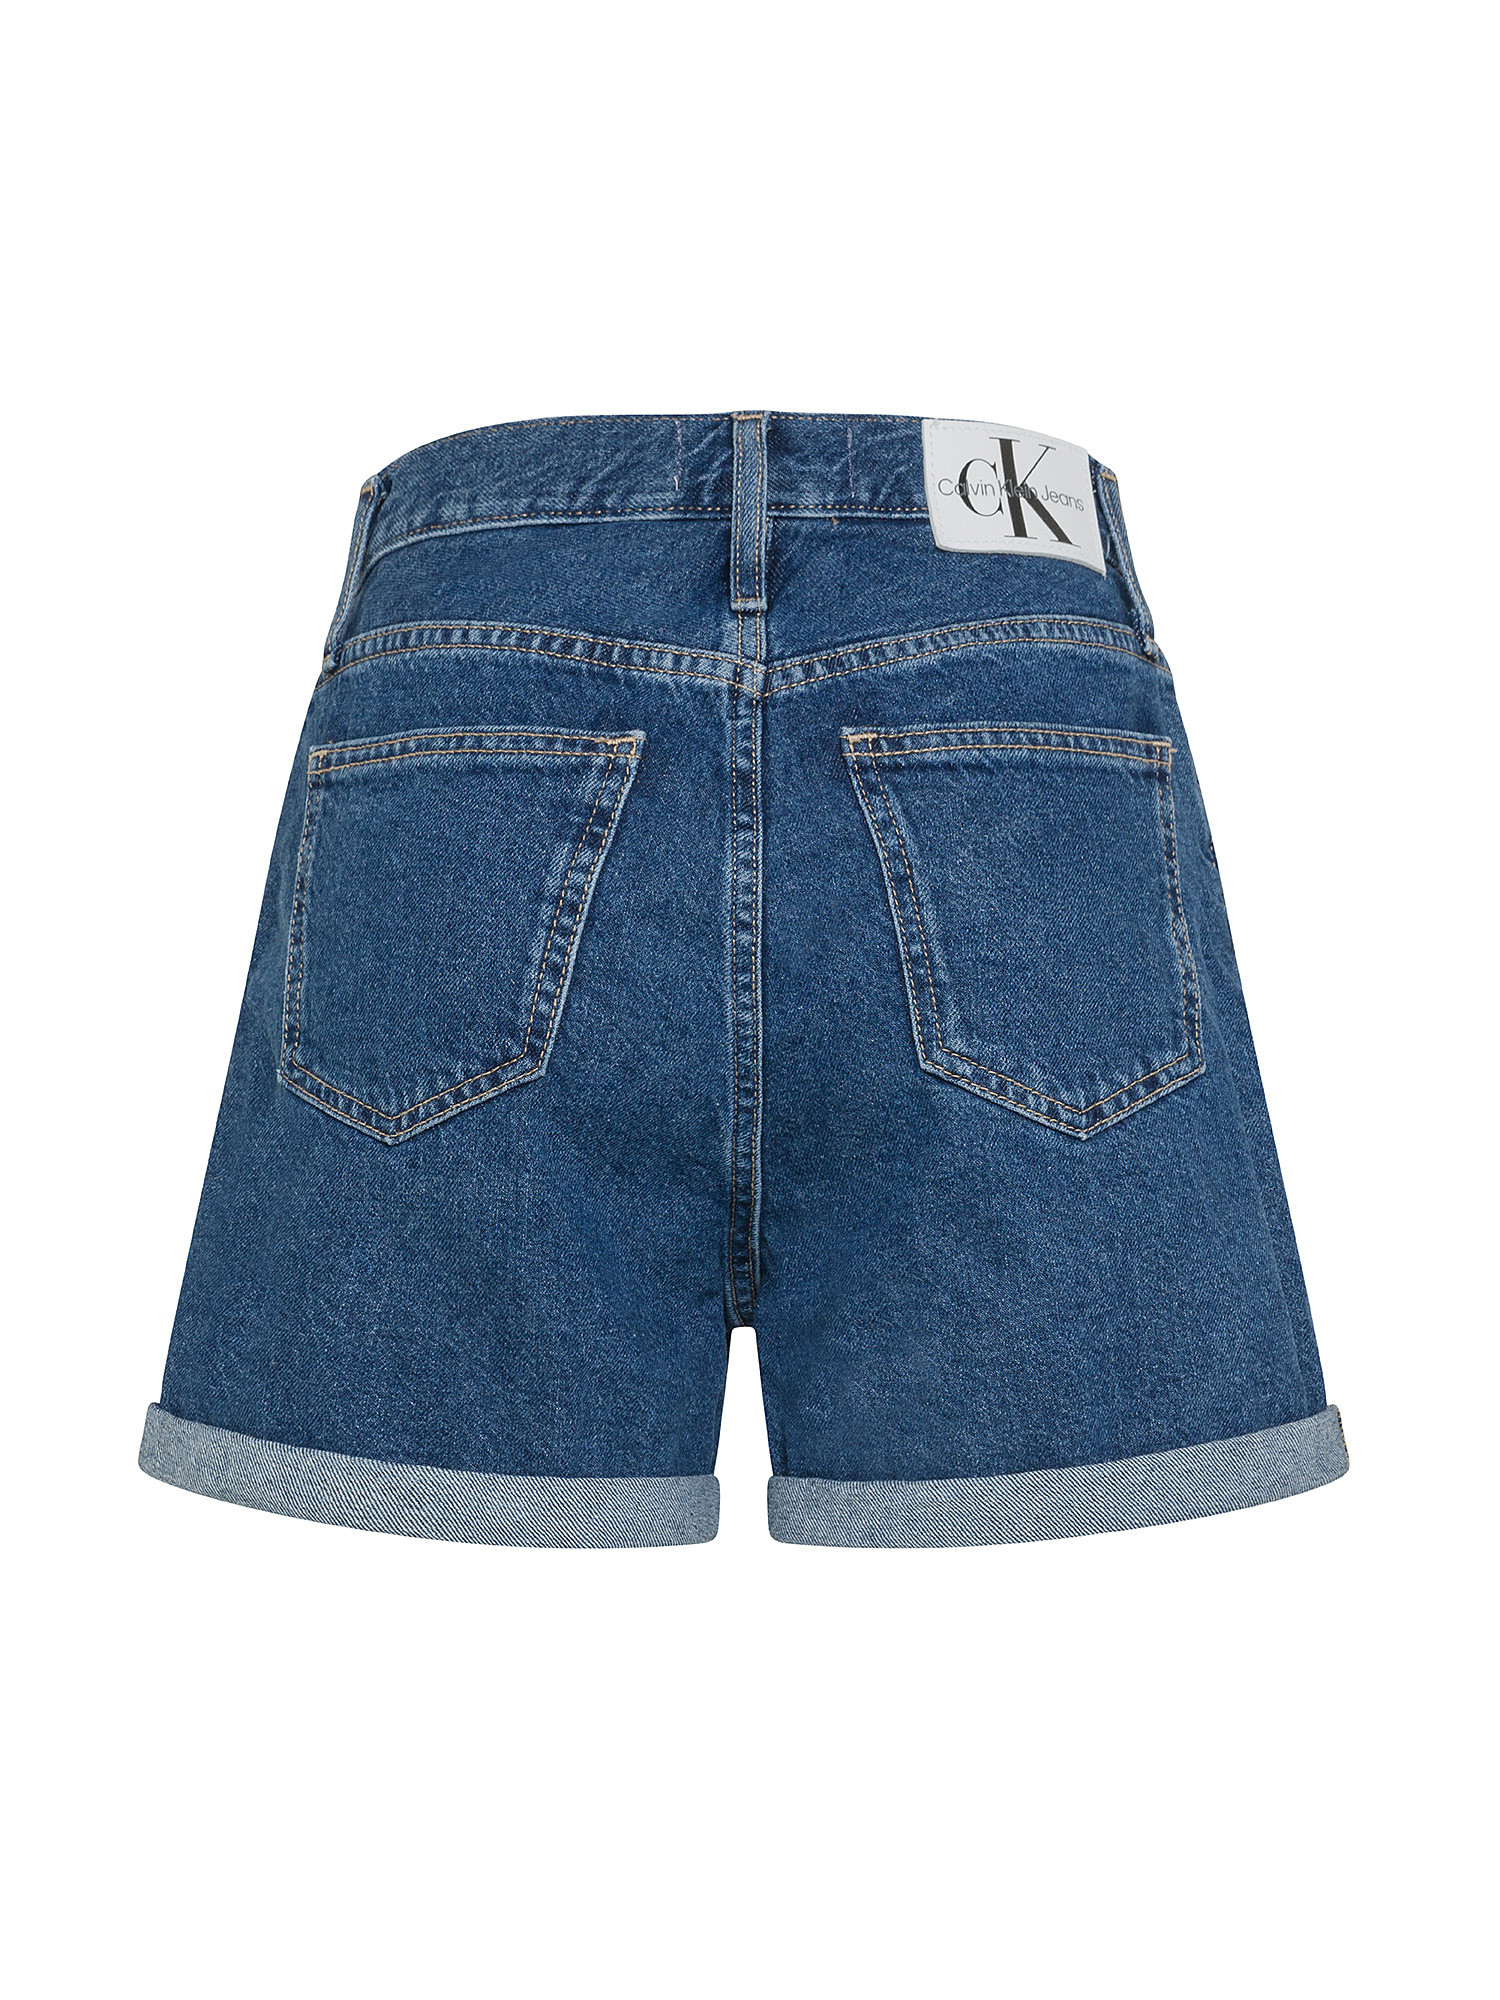 Calvin Klein Jeans - Shorts in denim Mom fit, Denim, large image number 1